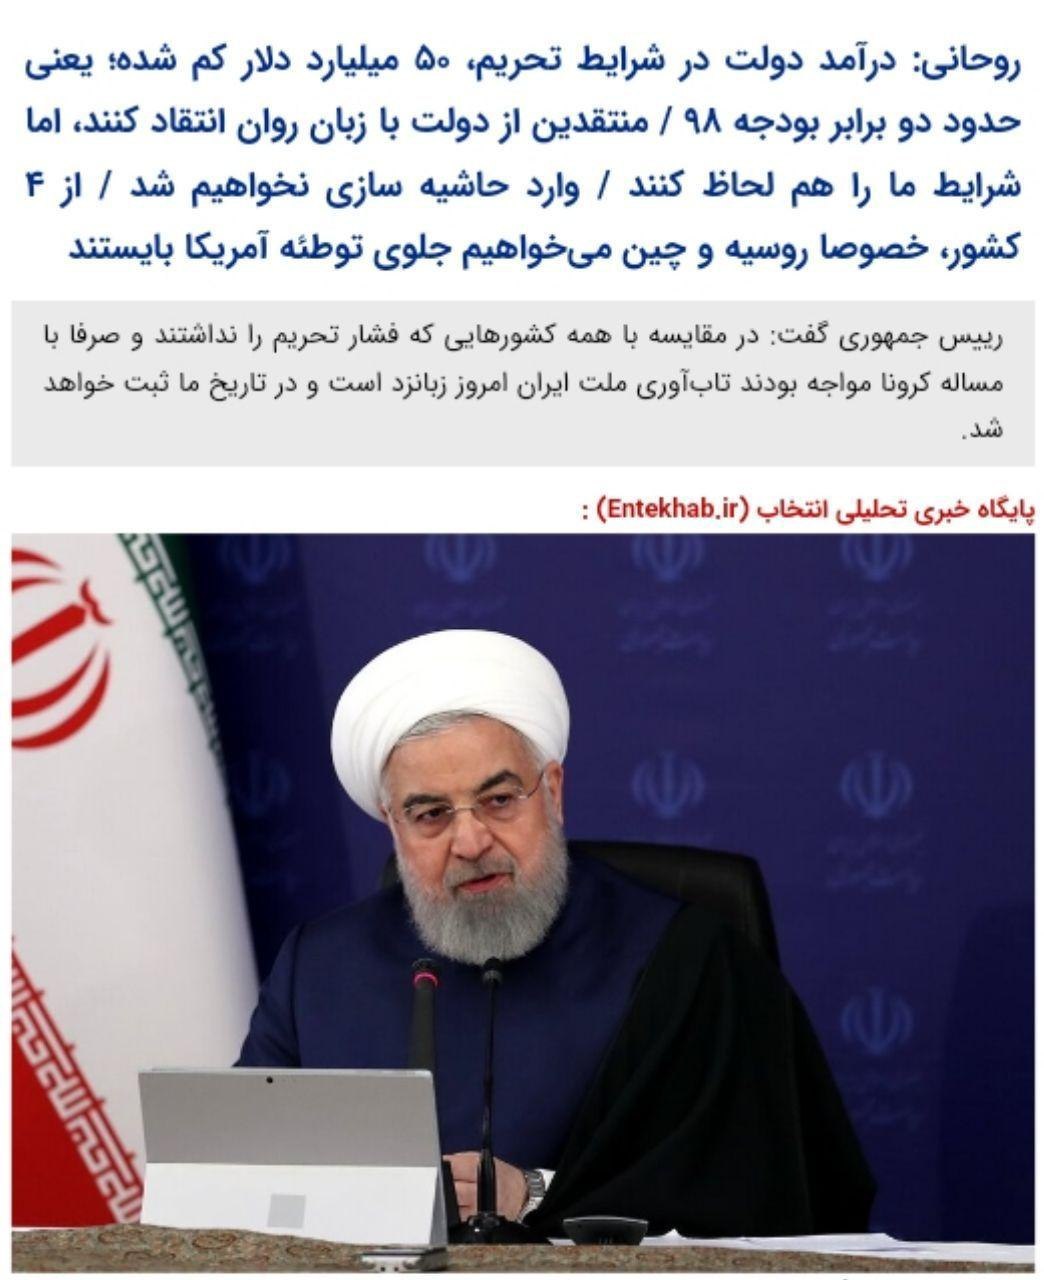 روحانی:درآمد دولت در شرایط تحریم، ۵۰ میلیارد دلار کم شده؛ یعنی حدود دو برابر بودجه ۹۸